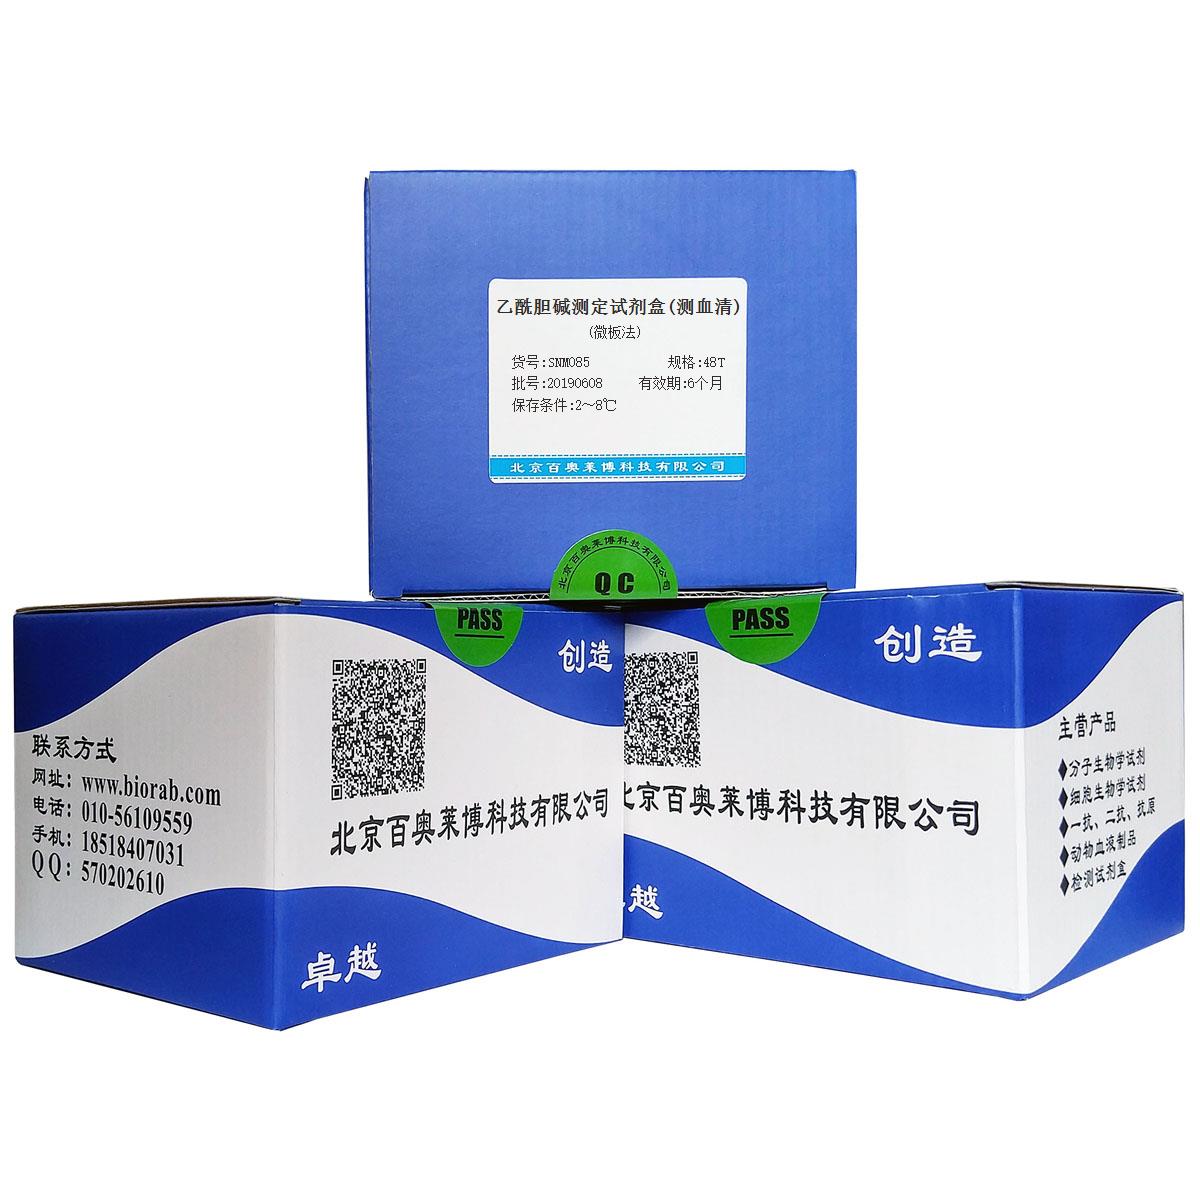 乙酰胆碱测定试剂盒(测血清)(微板法)北京供应商